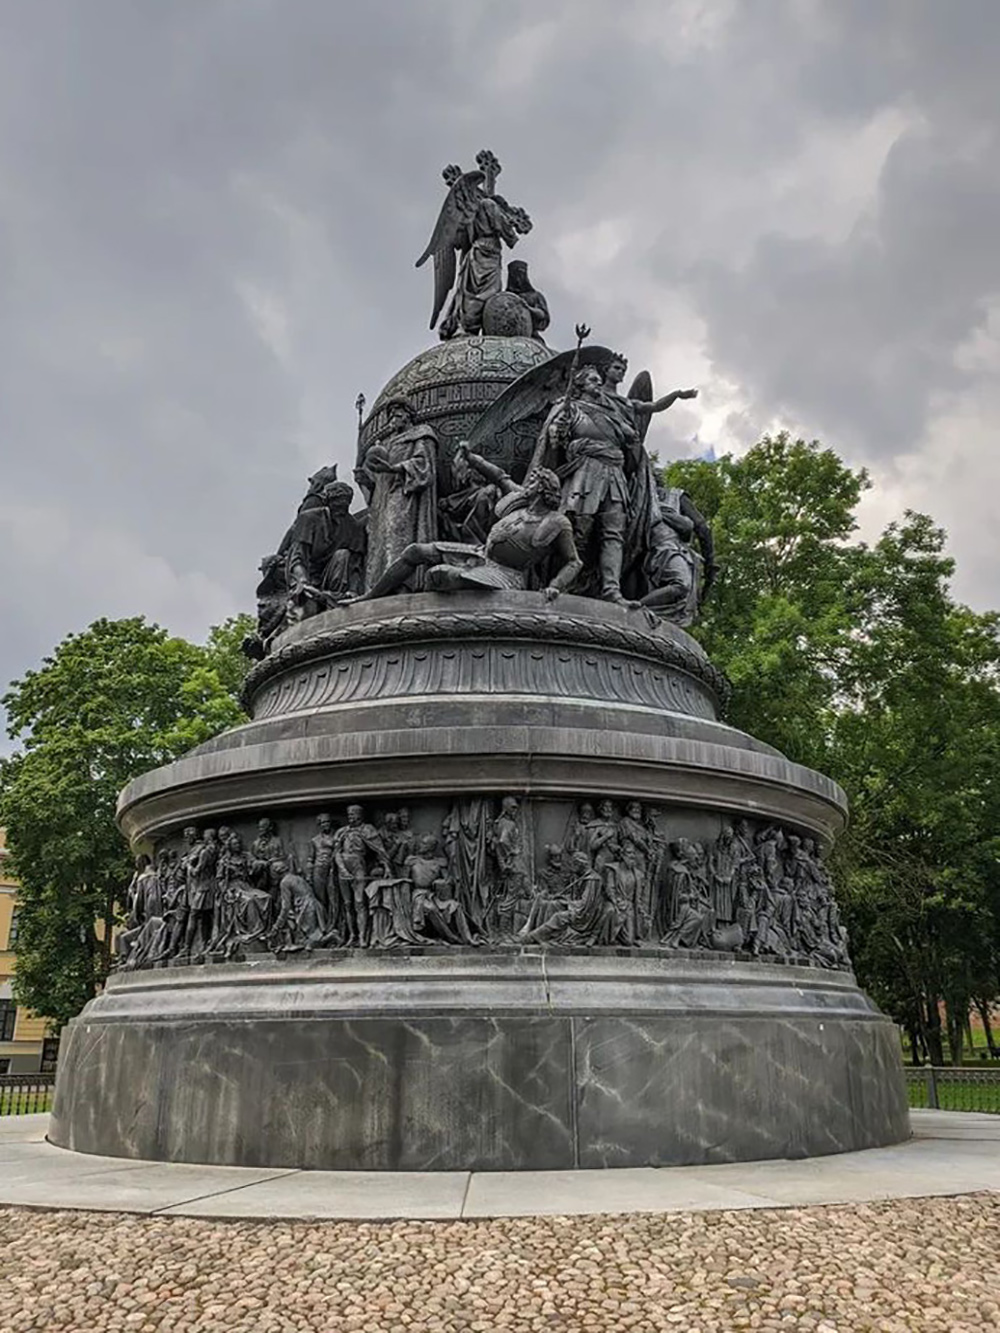 Памятник «Тысячелетие России» понравился еще во время учебы в школе, в реальности он впечатлил гораздо больше